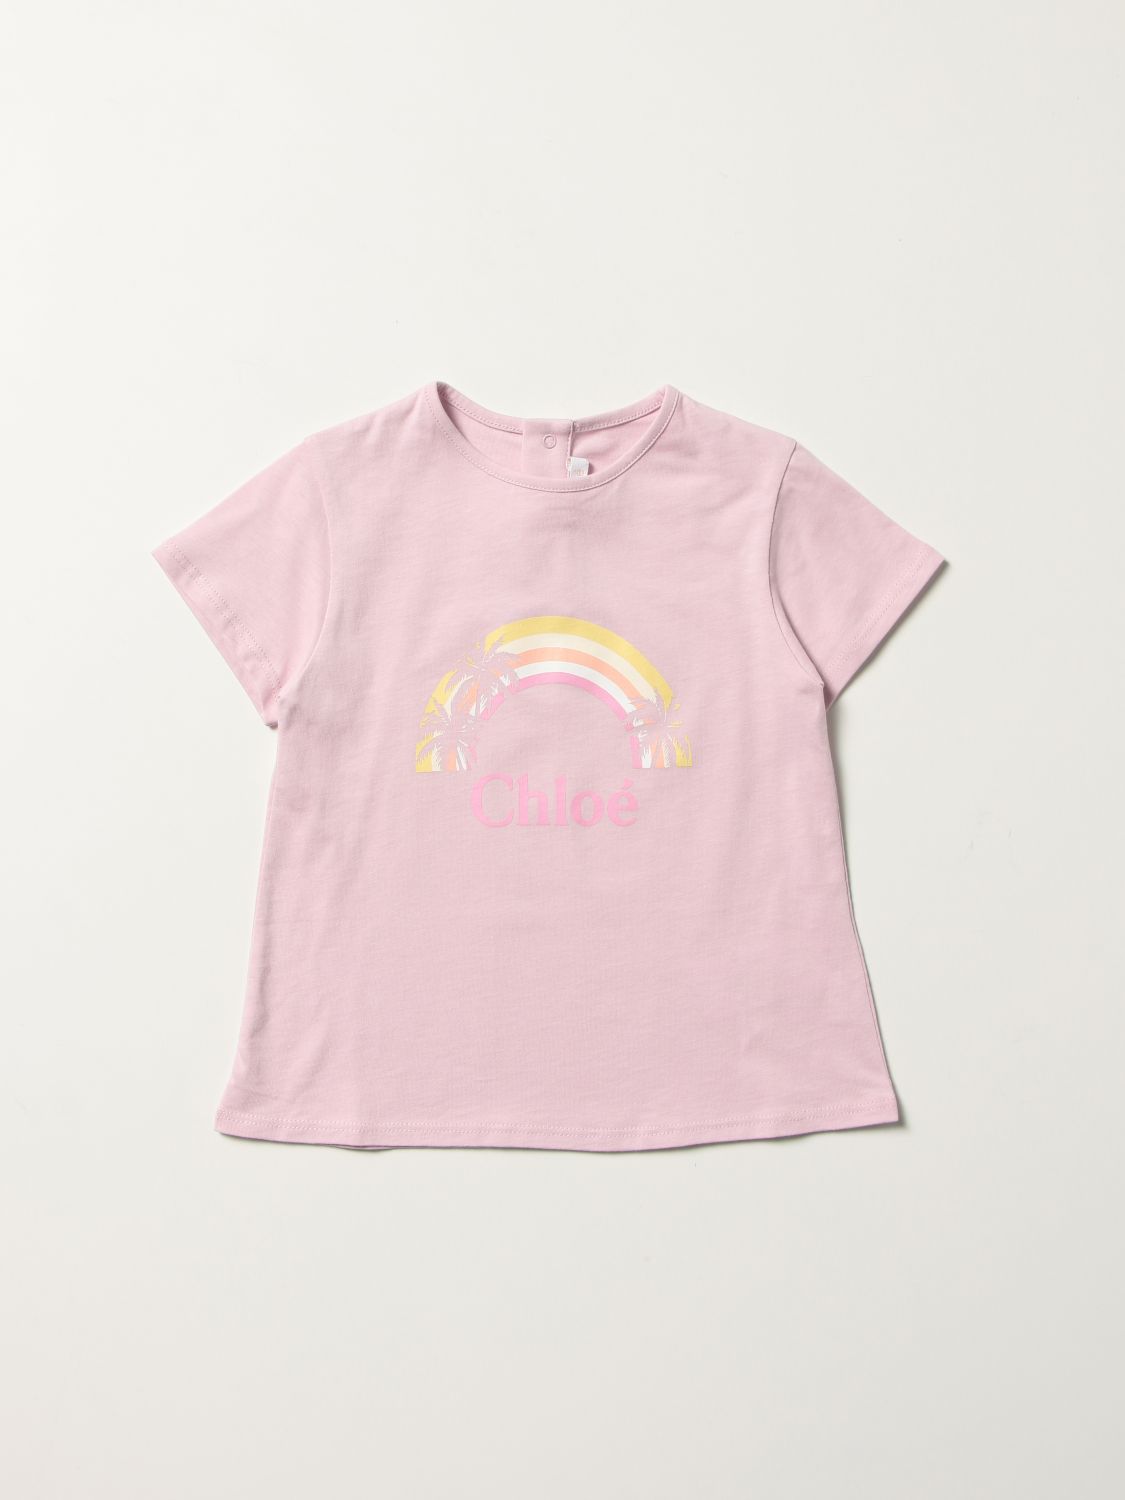 CHLOÉ: cotton t-shirt with rainbow logo - Lilac | Chloé t-shirt C05403 ...